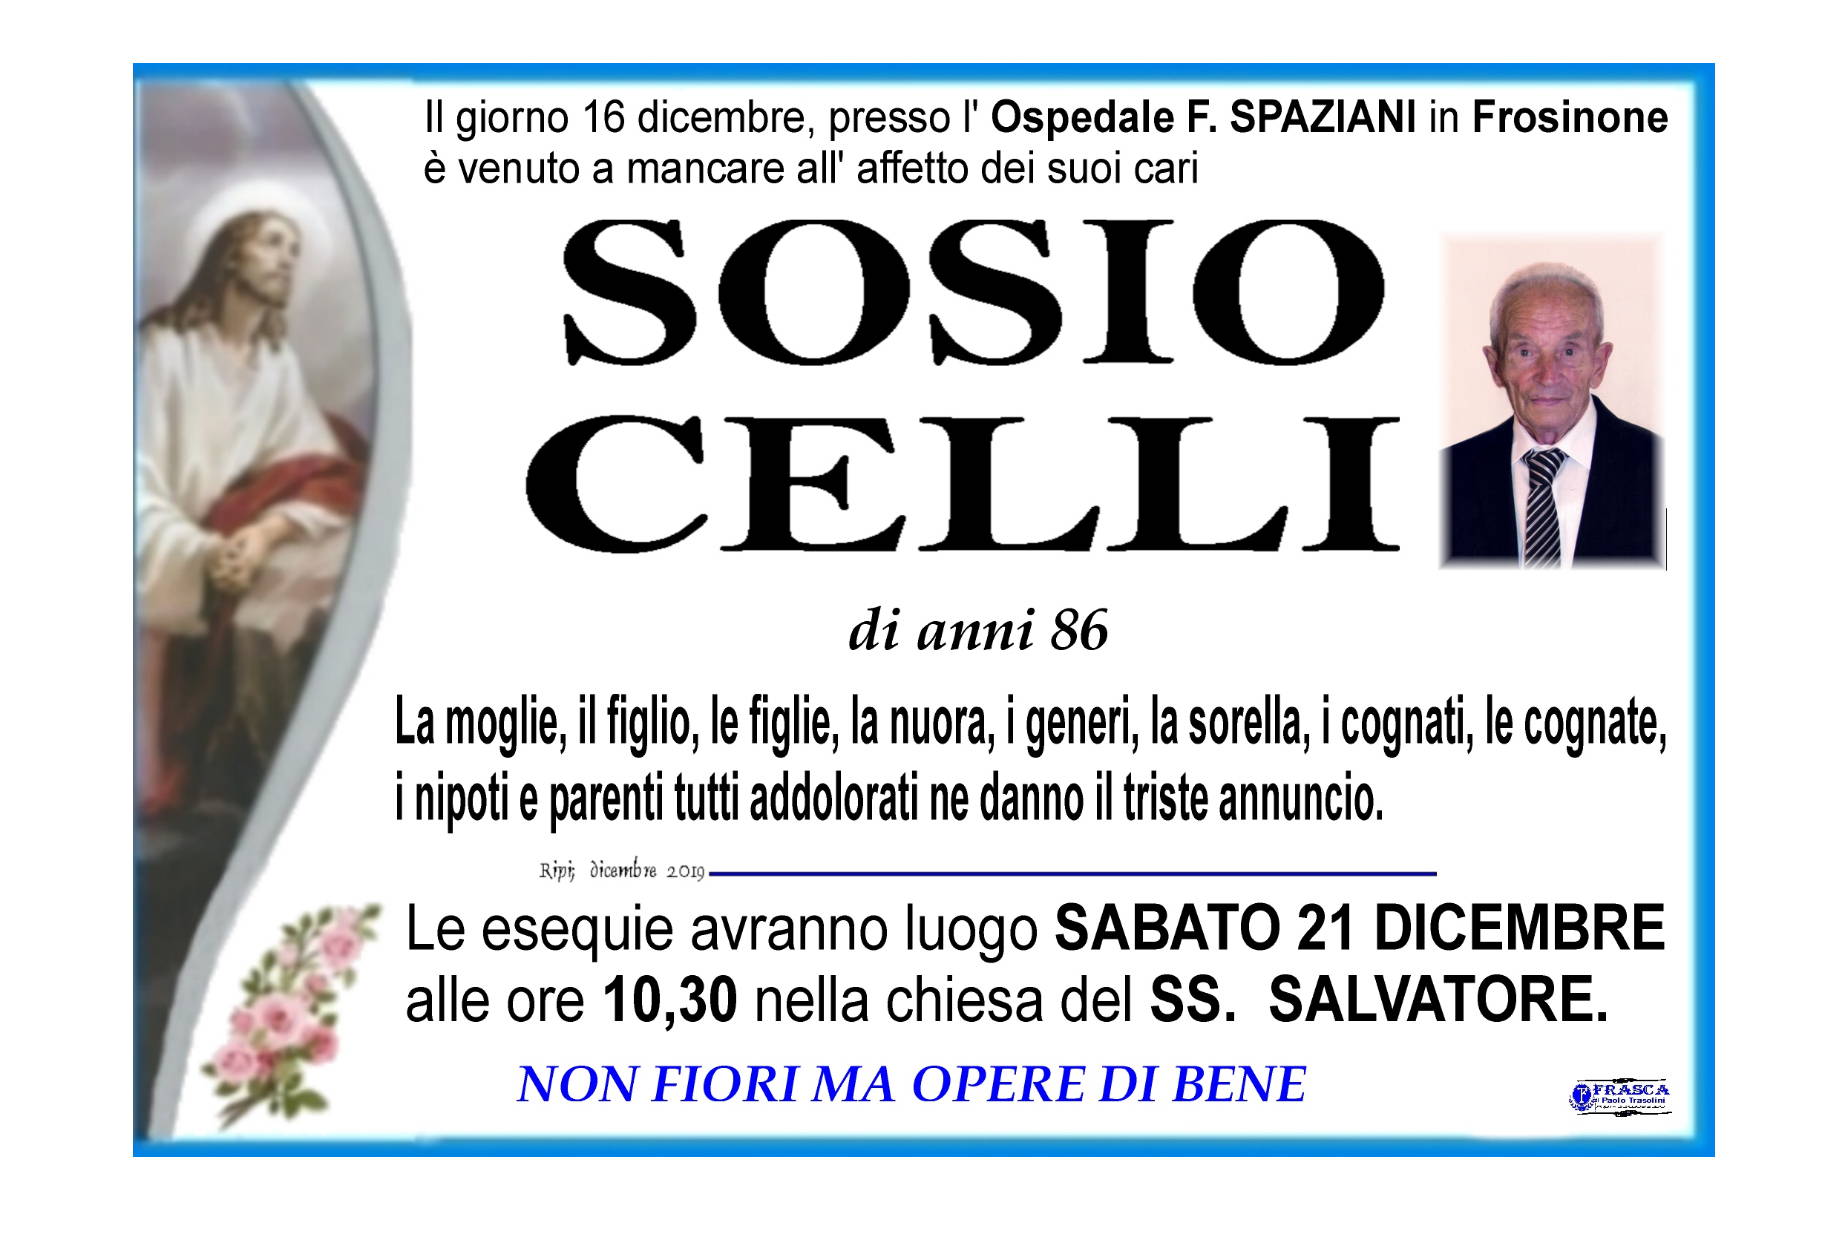 Sosio Celli